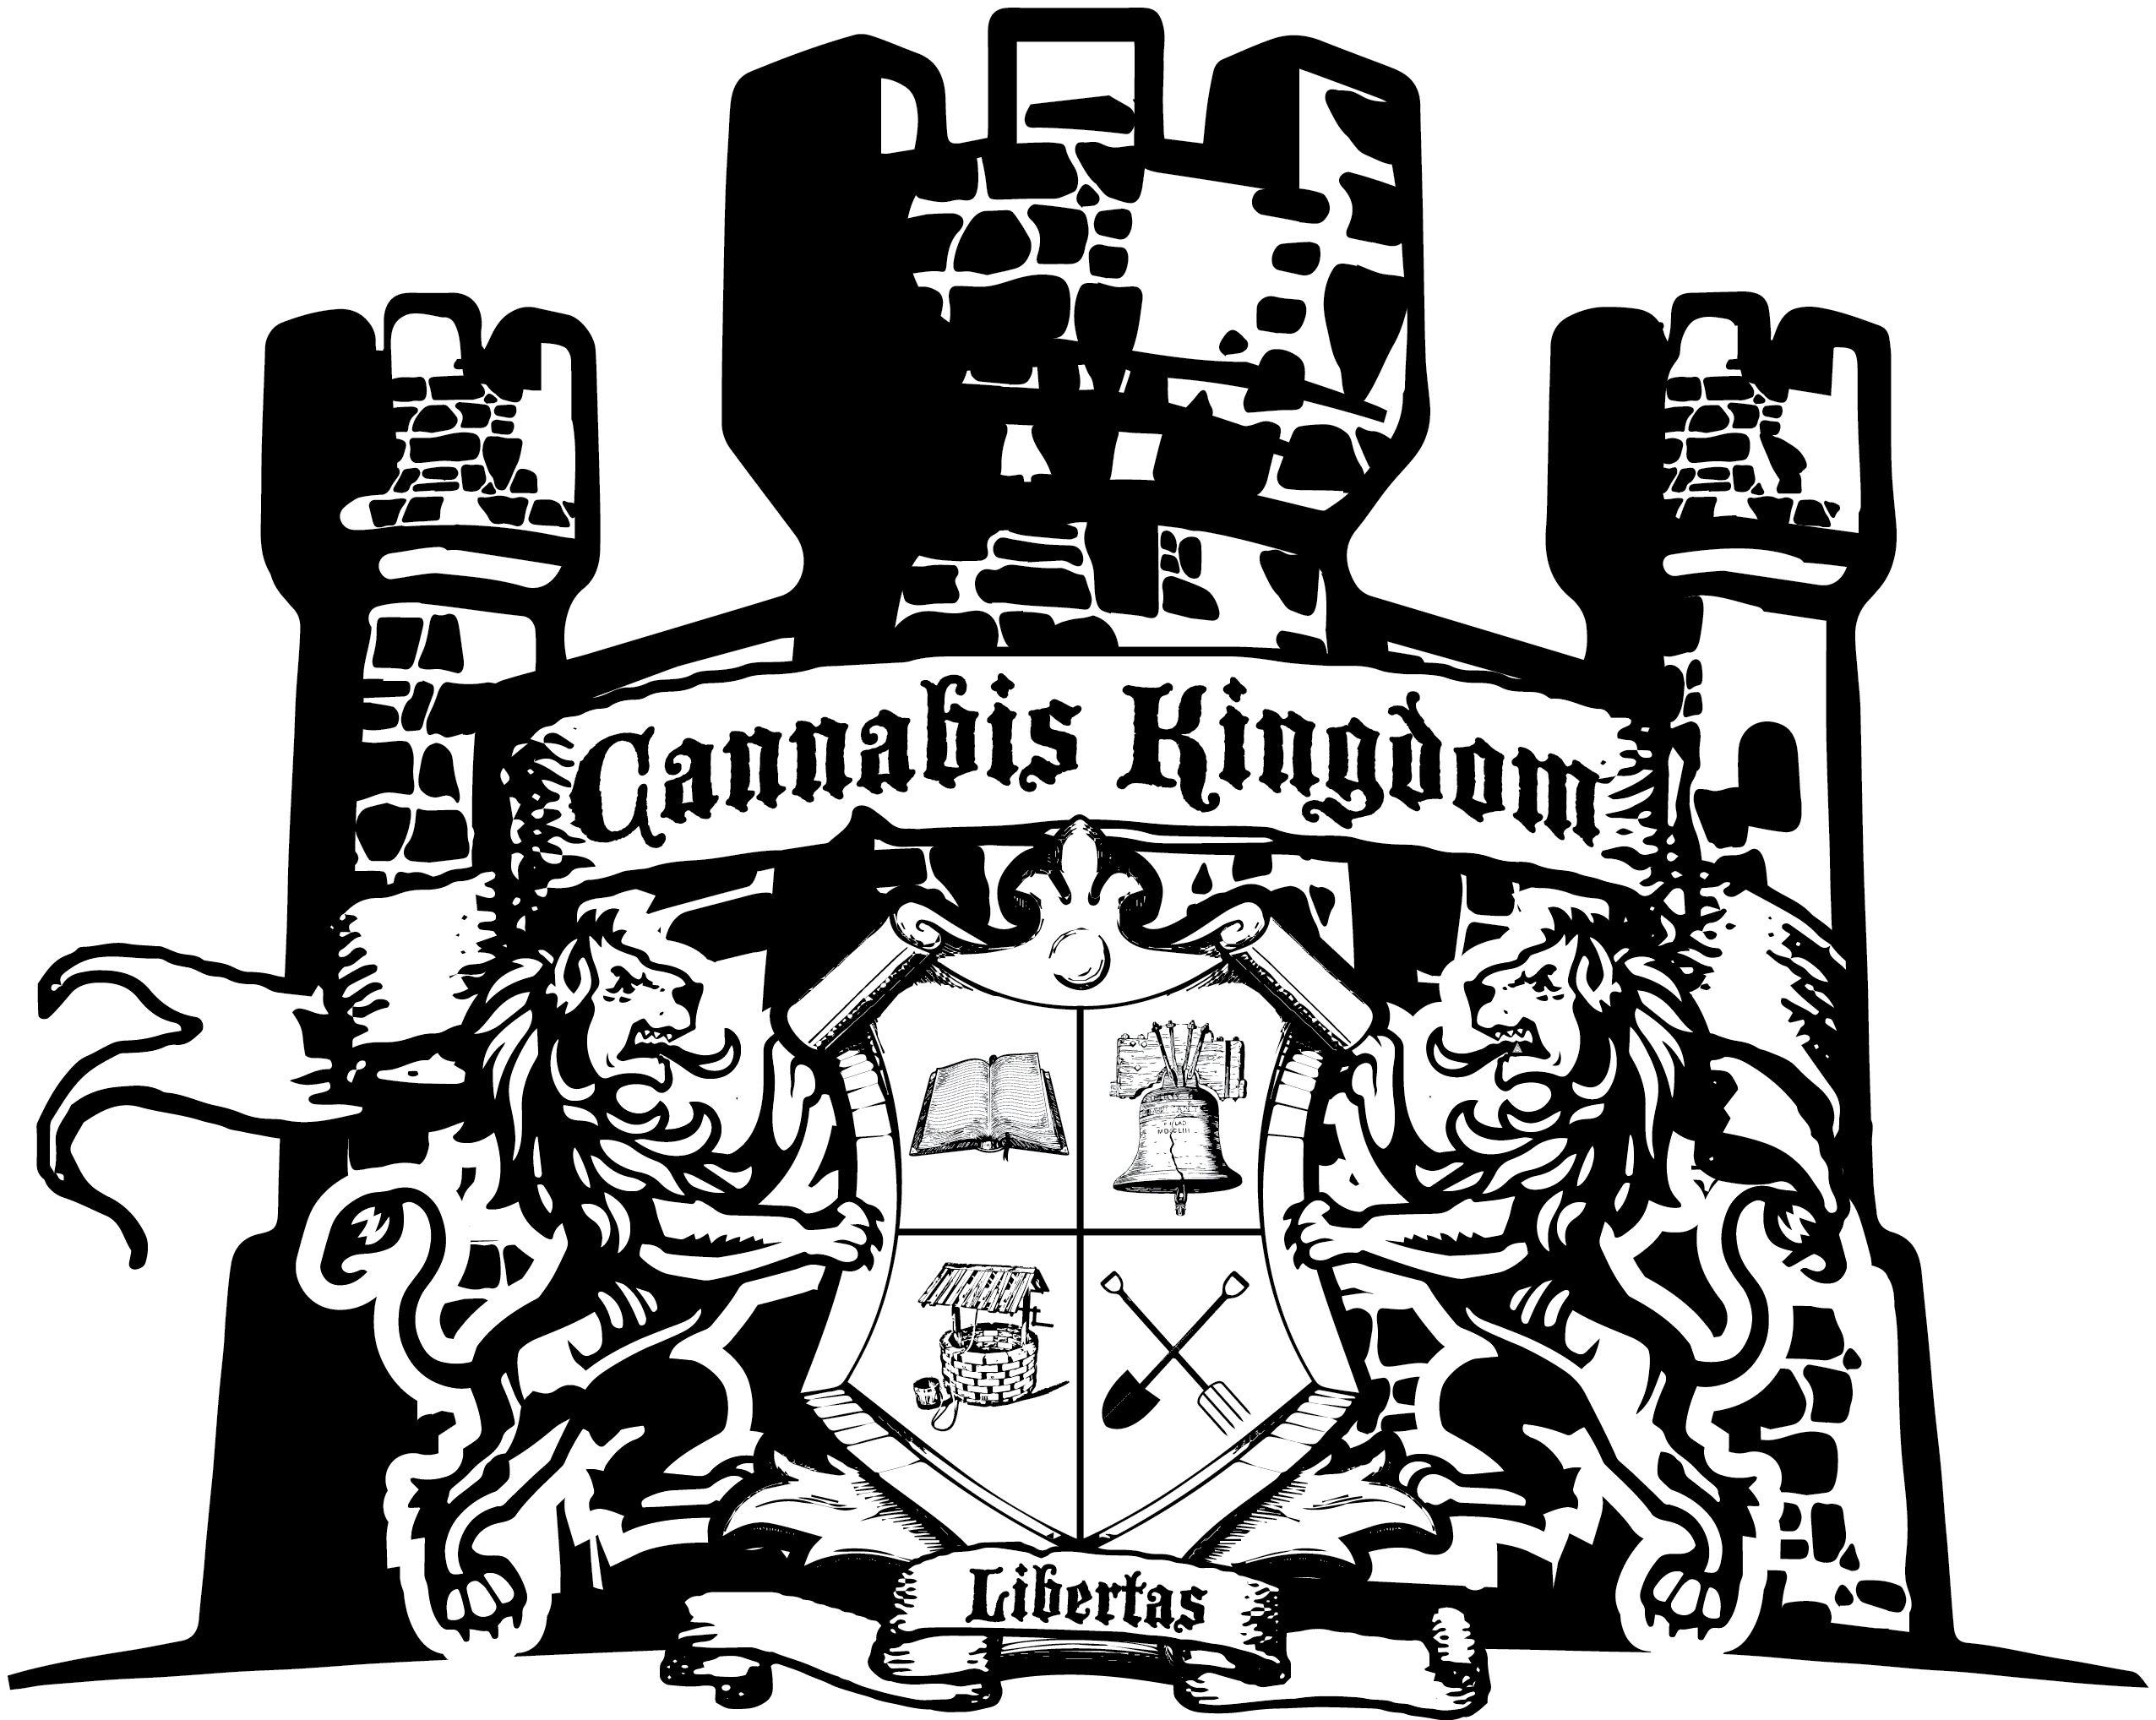 Cannabis Kingdom logo